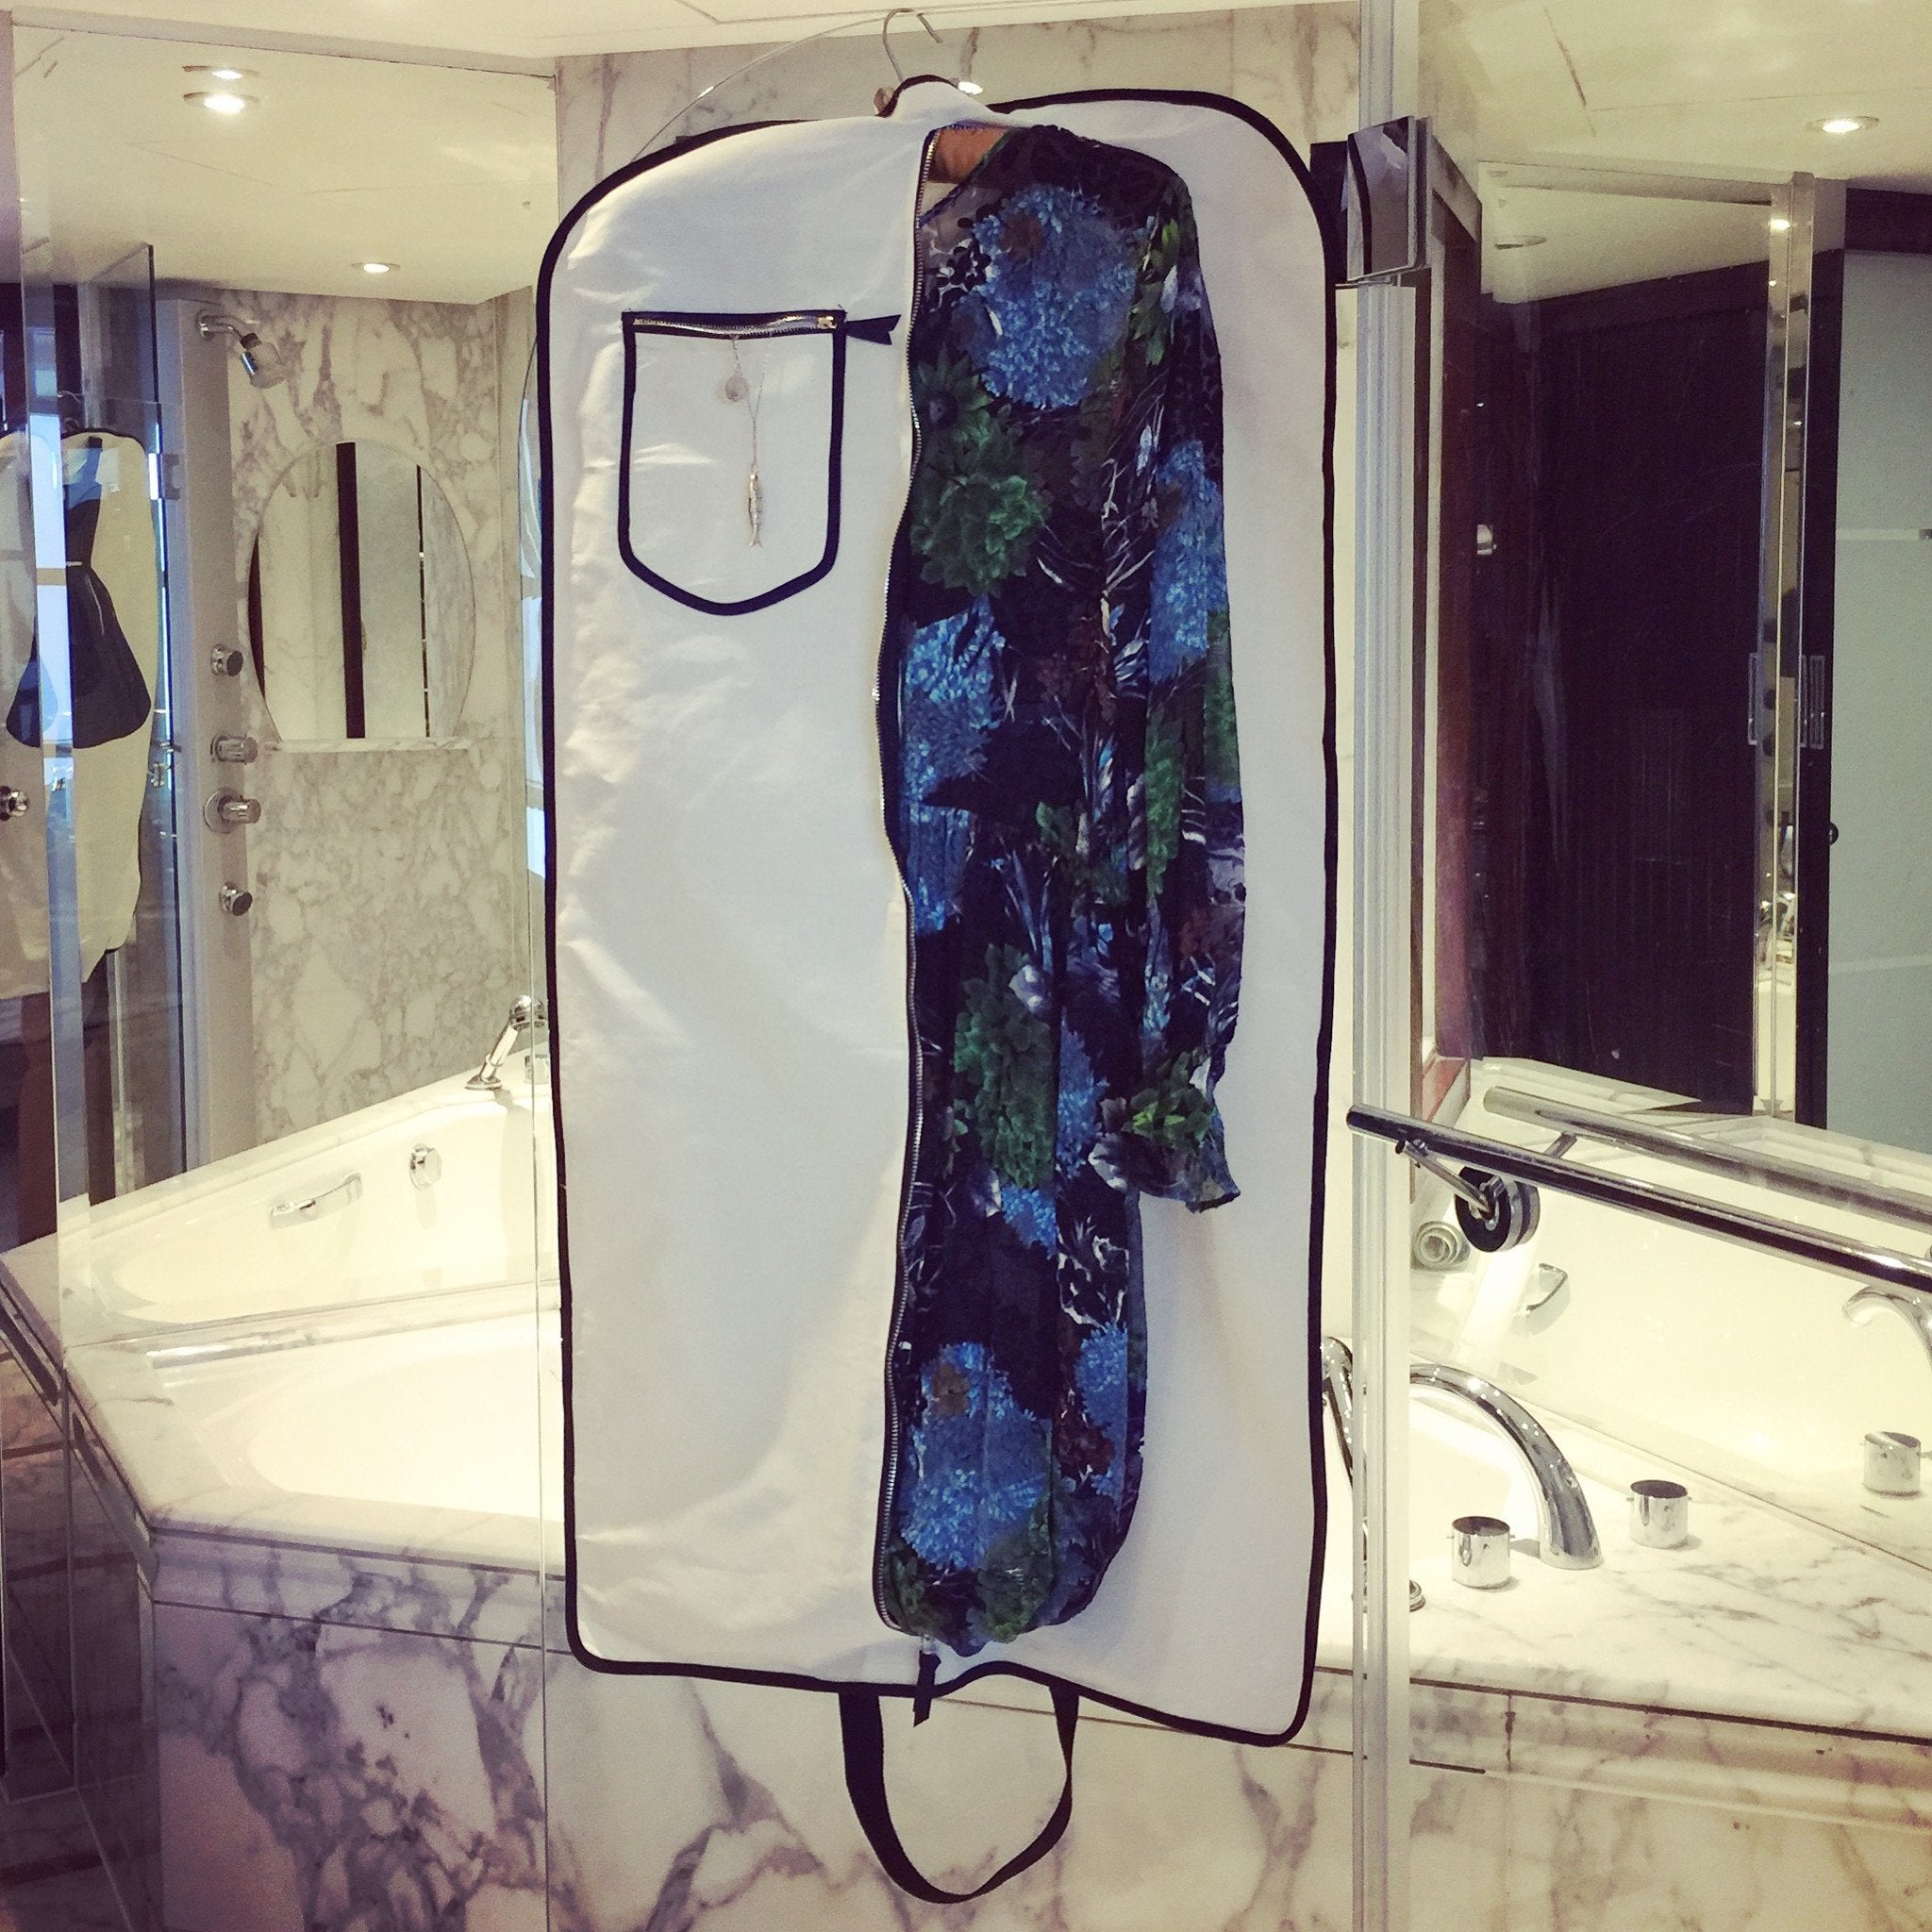 Une salle de bains en marbre avec une robe de sac à vêtements LBD accrochée à la douche.